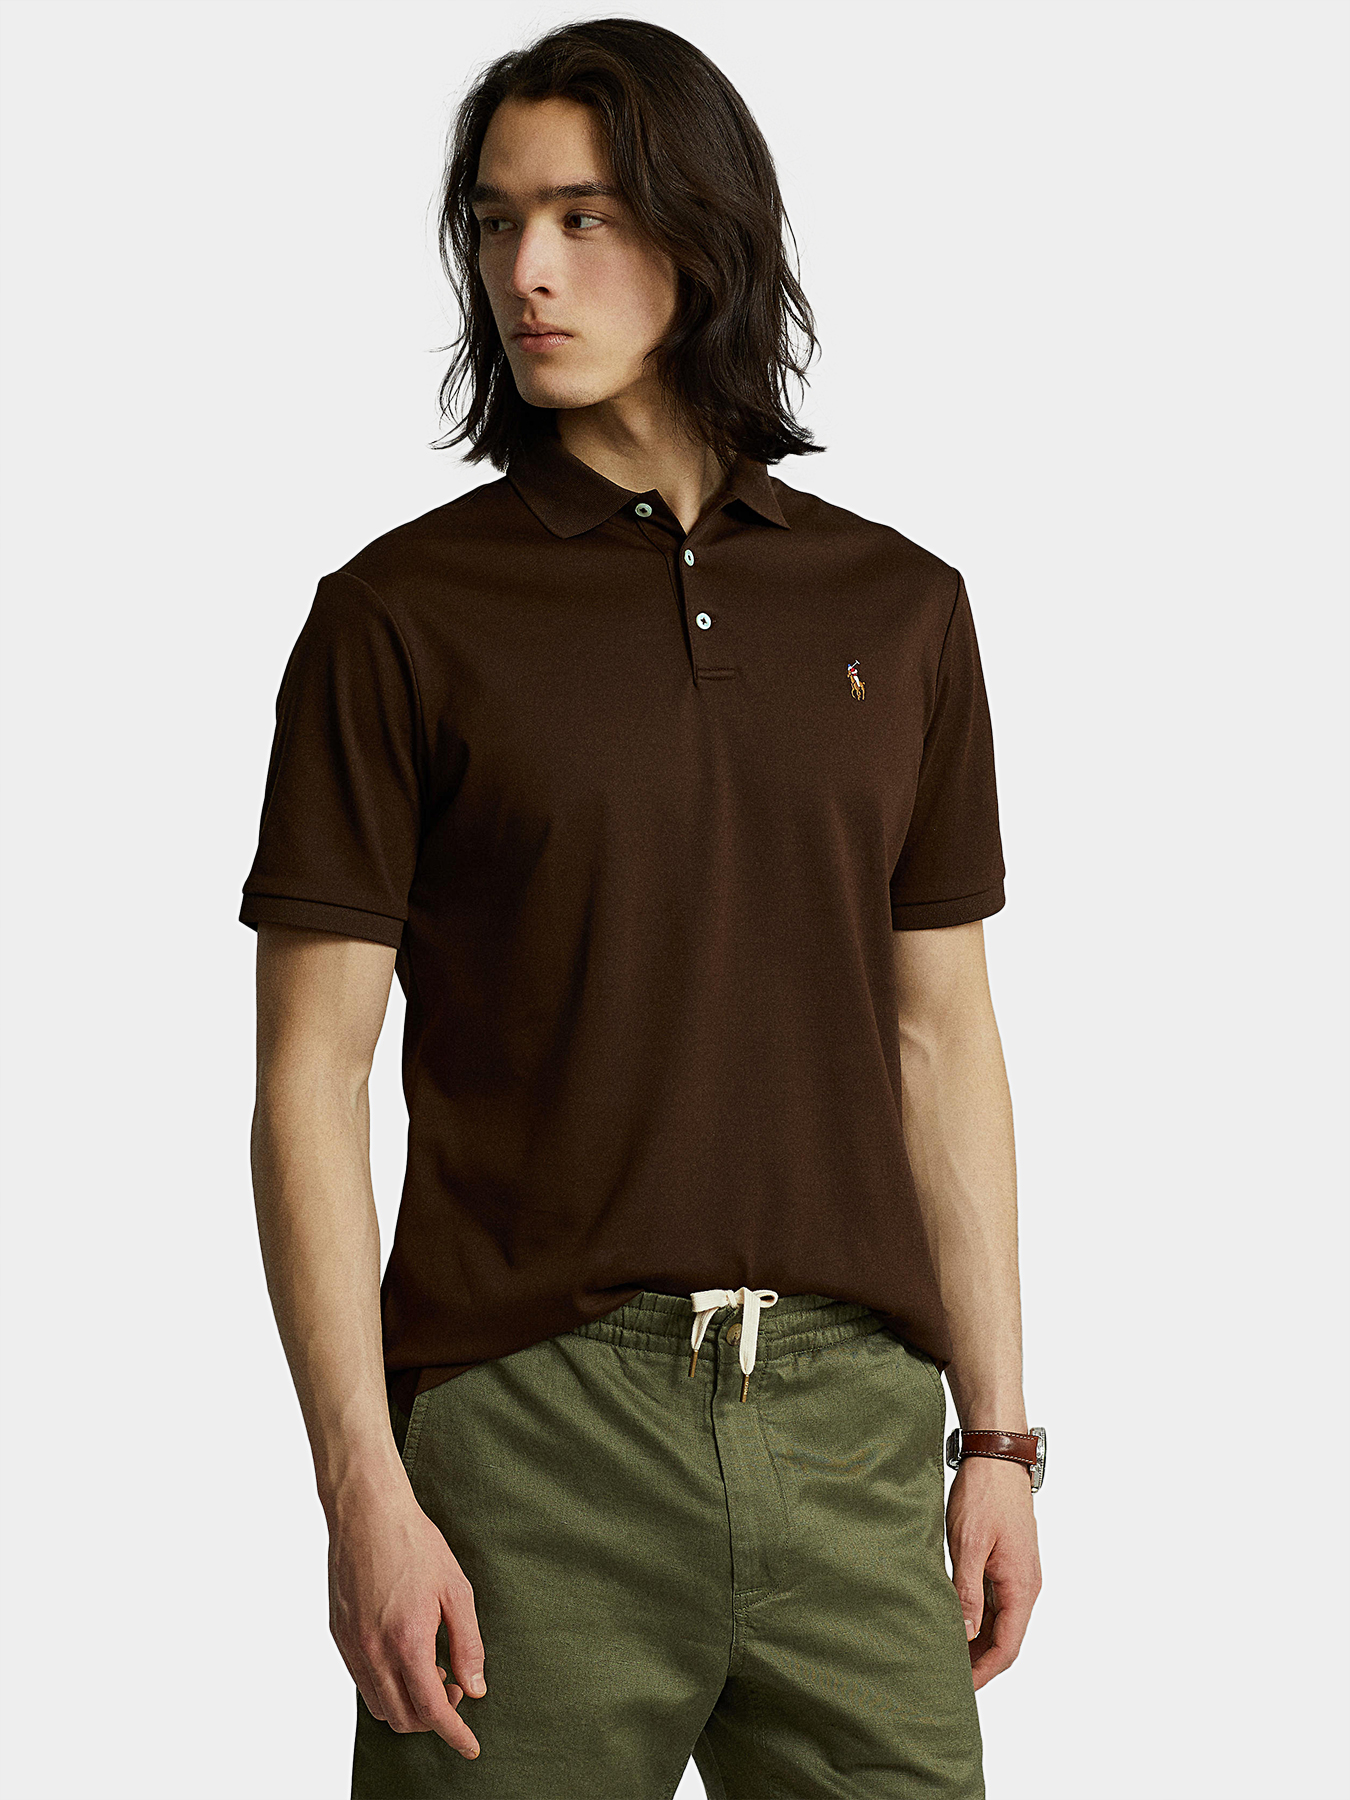 Dark brown cotton Polo shirt brand POLO RALPH LAUREN —  /en